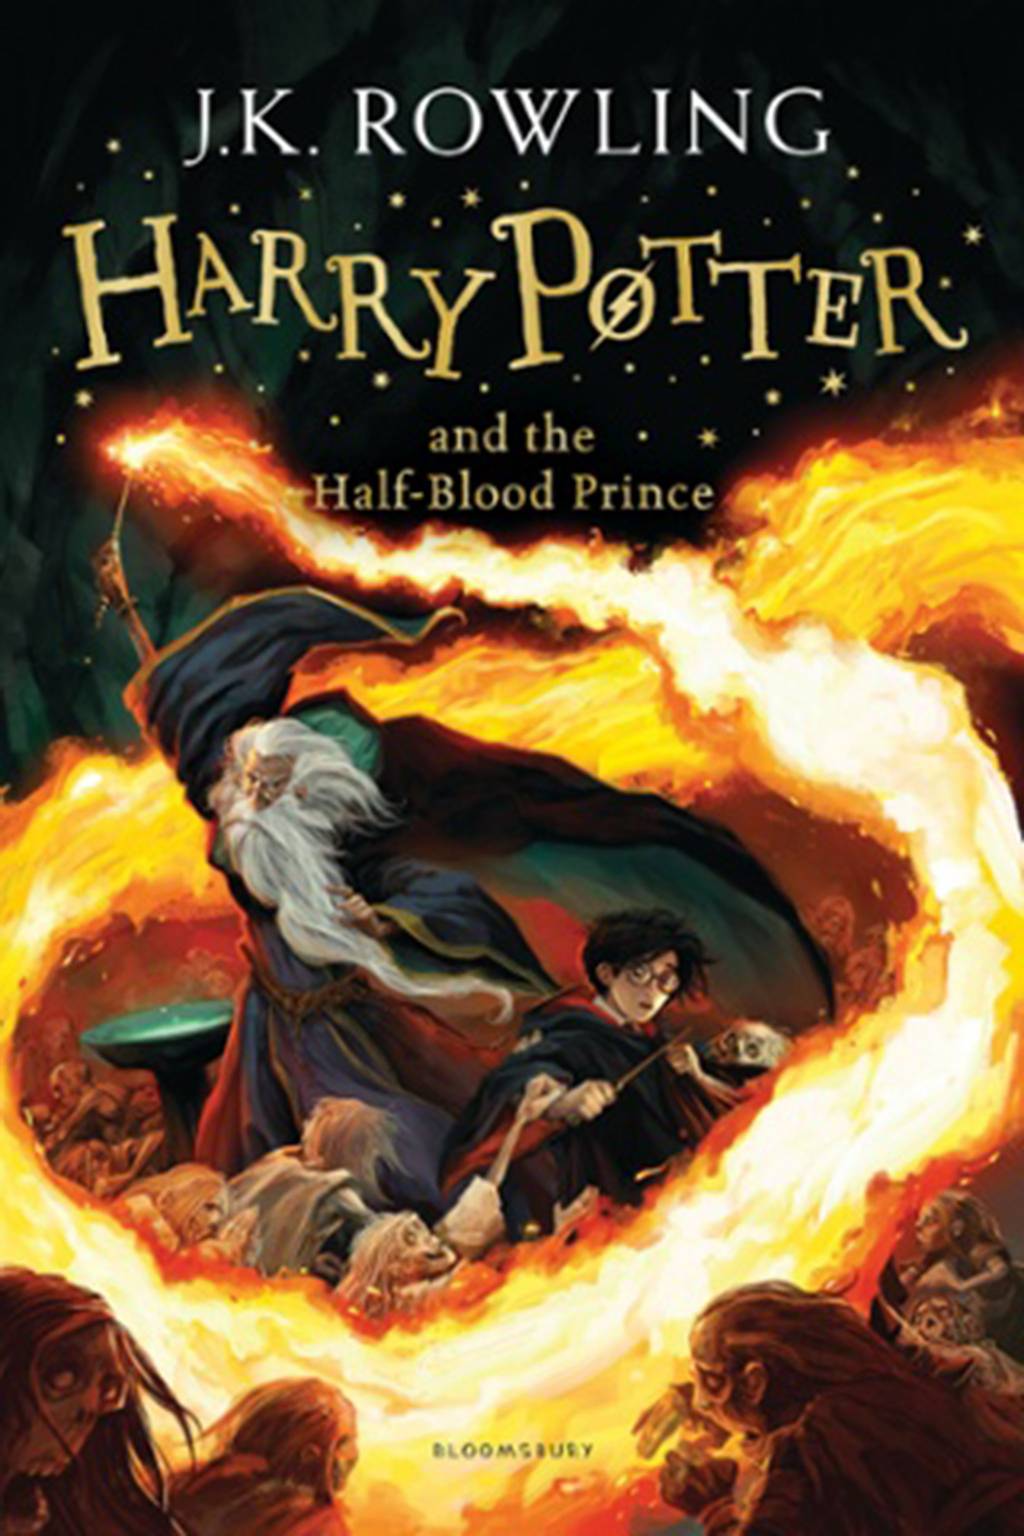 Гарри Поттер и принц-полукровка